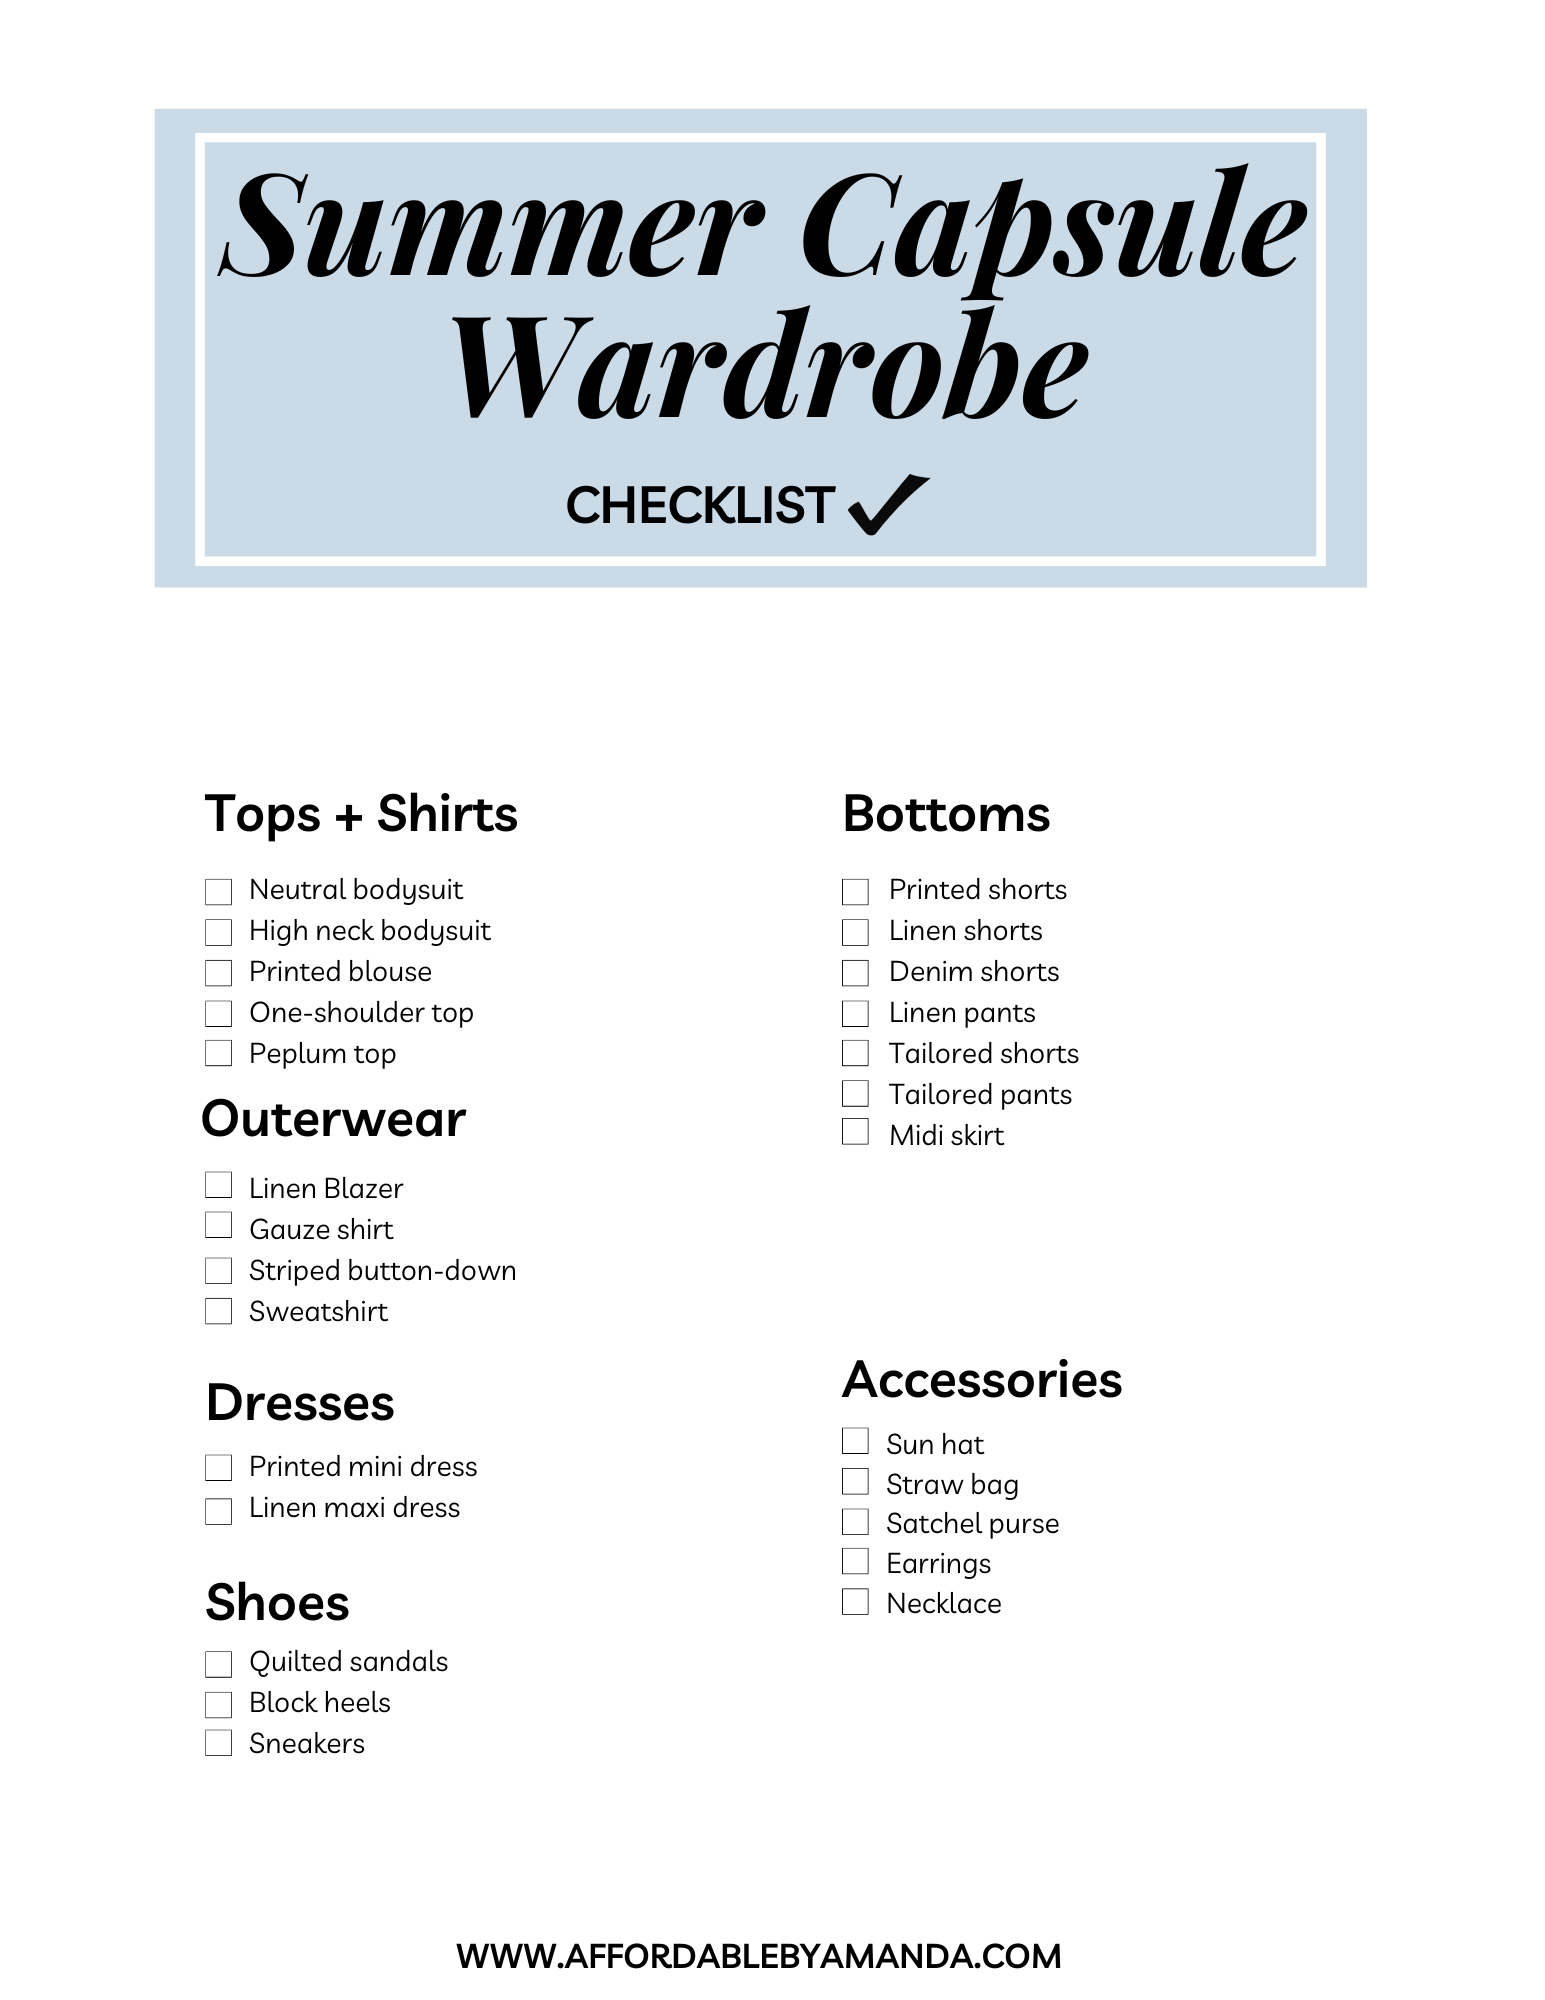 Summer Capsule Wardrobe Checklist